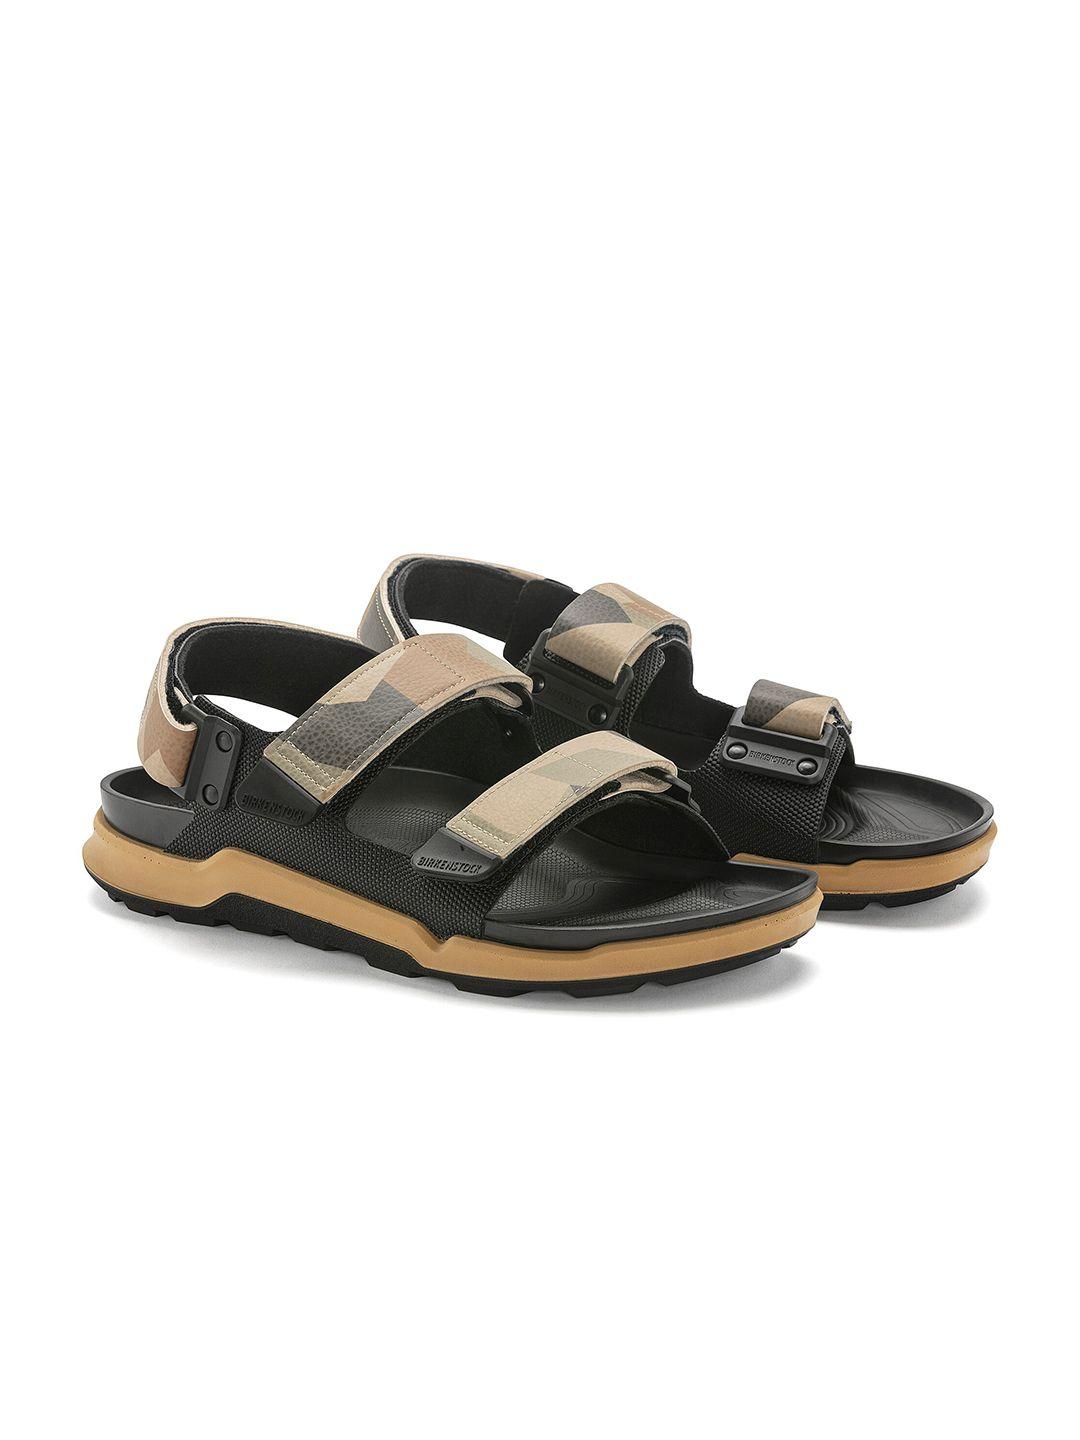 birkenstock tatacoa men regular width comfort sandals